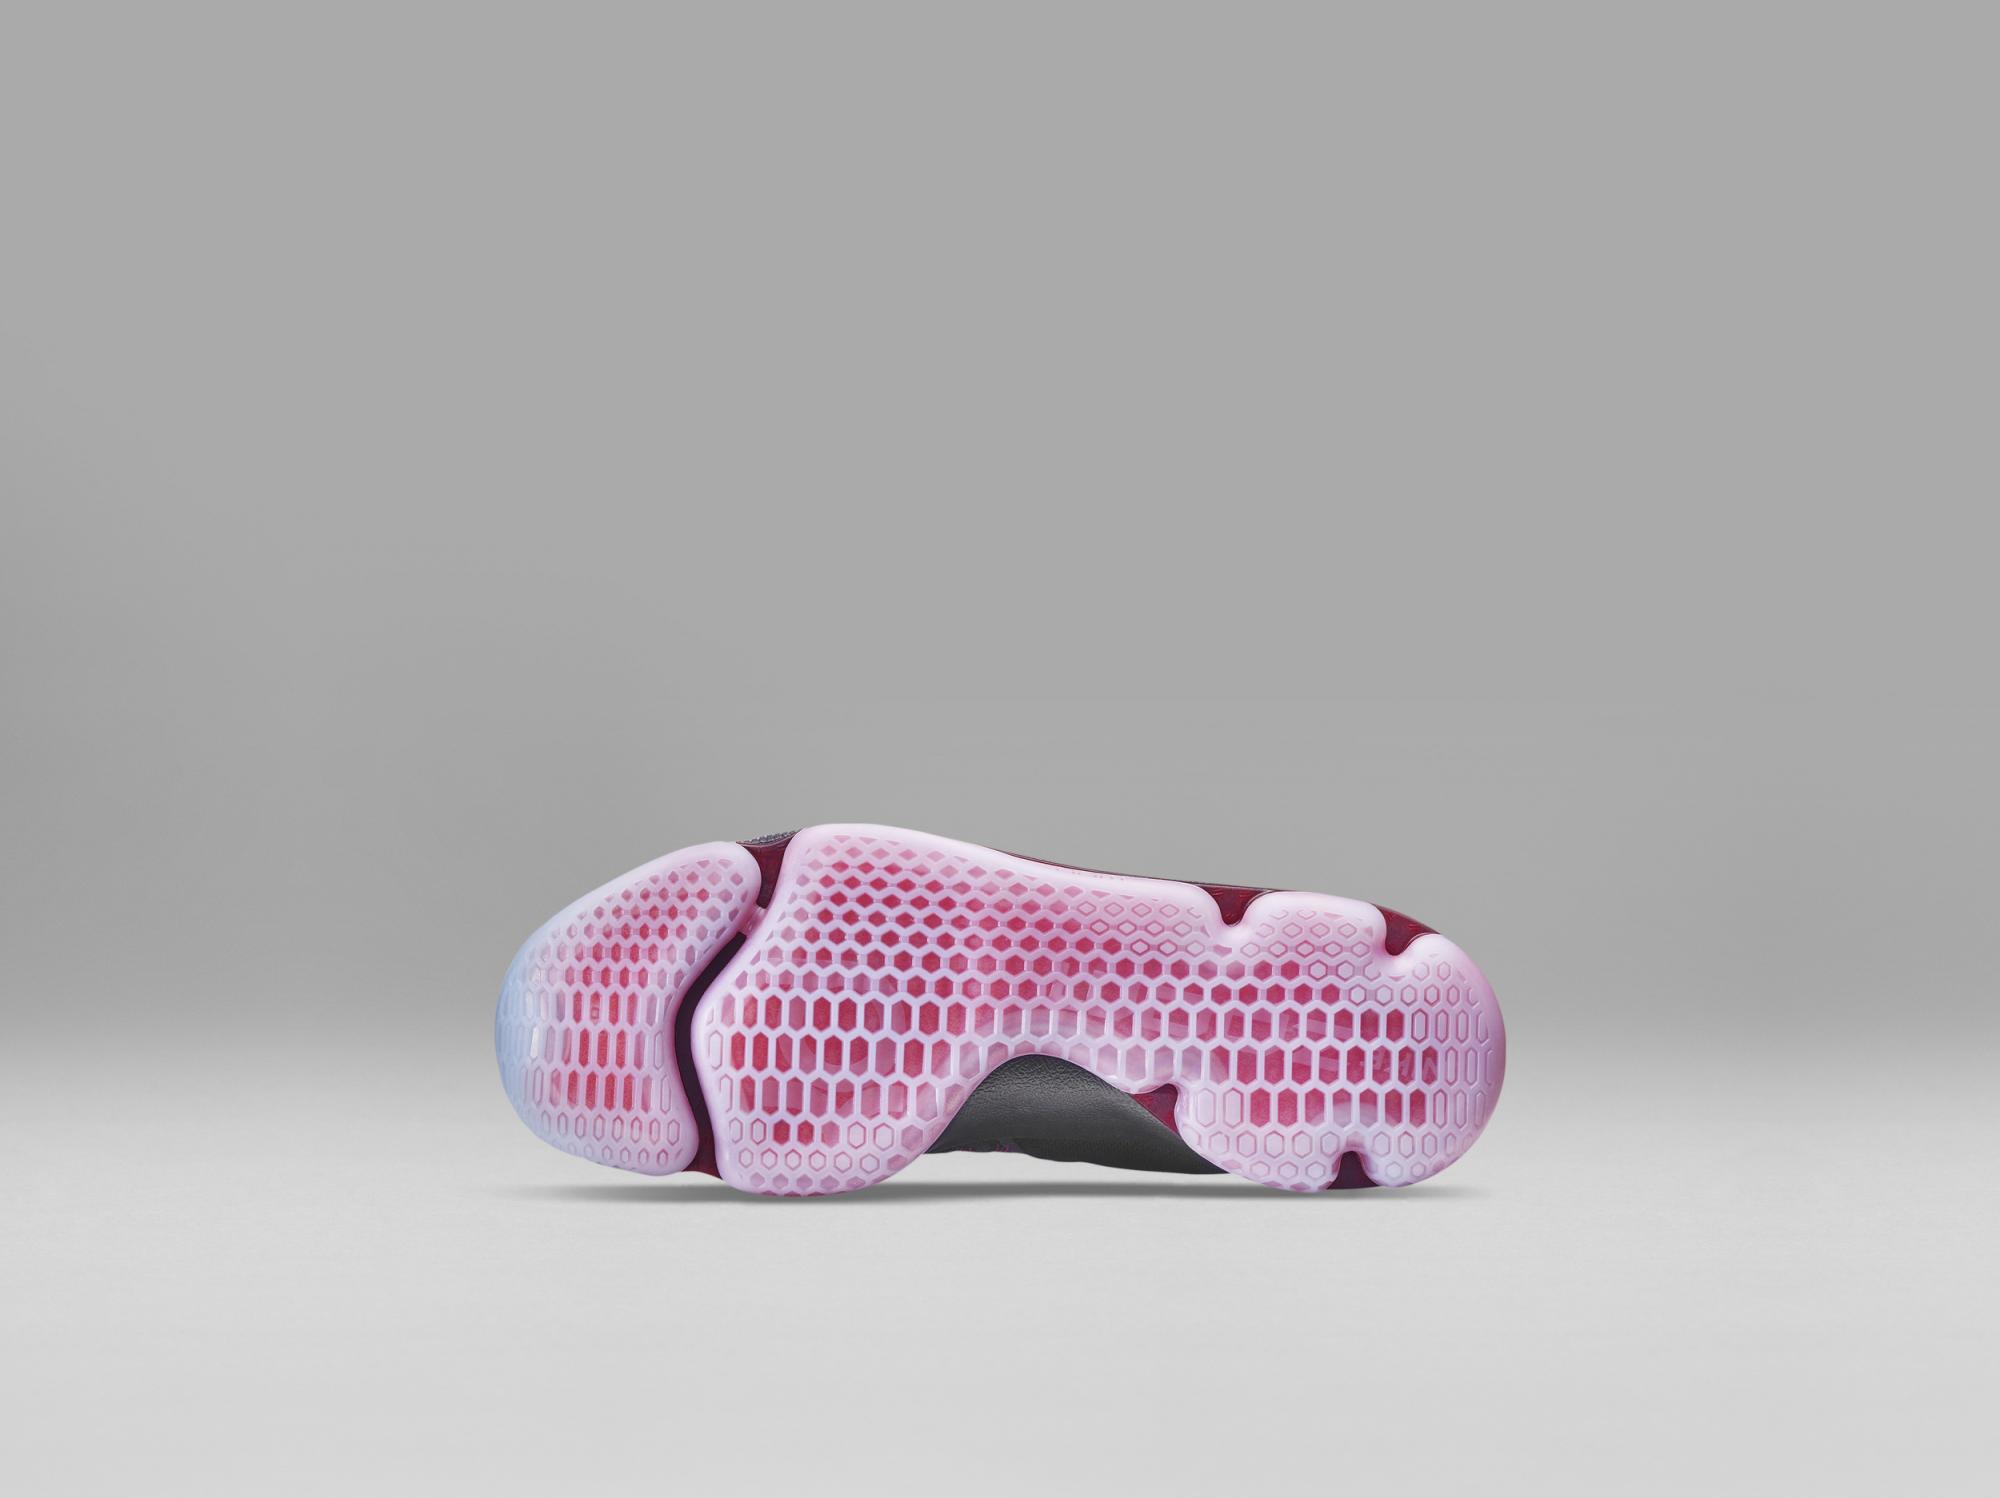 Las zapatillas con la tecnología de 'Volver al Futuro' saldrán a la venta el 28 de noviembre